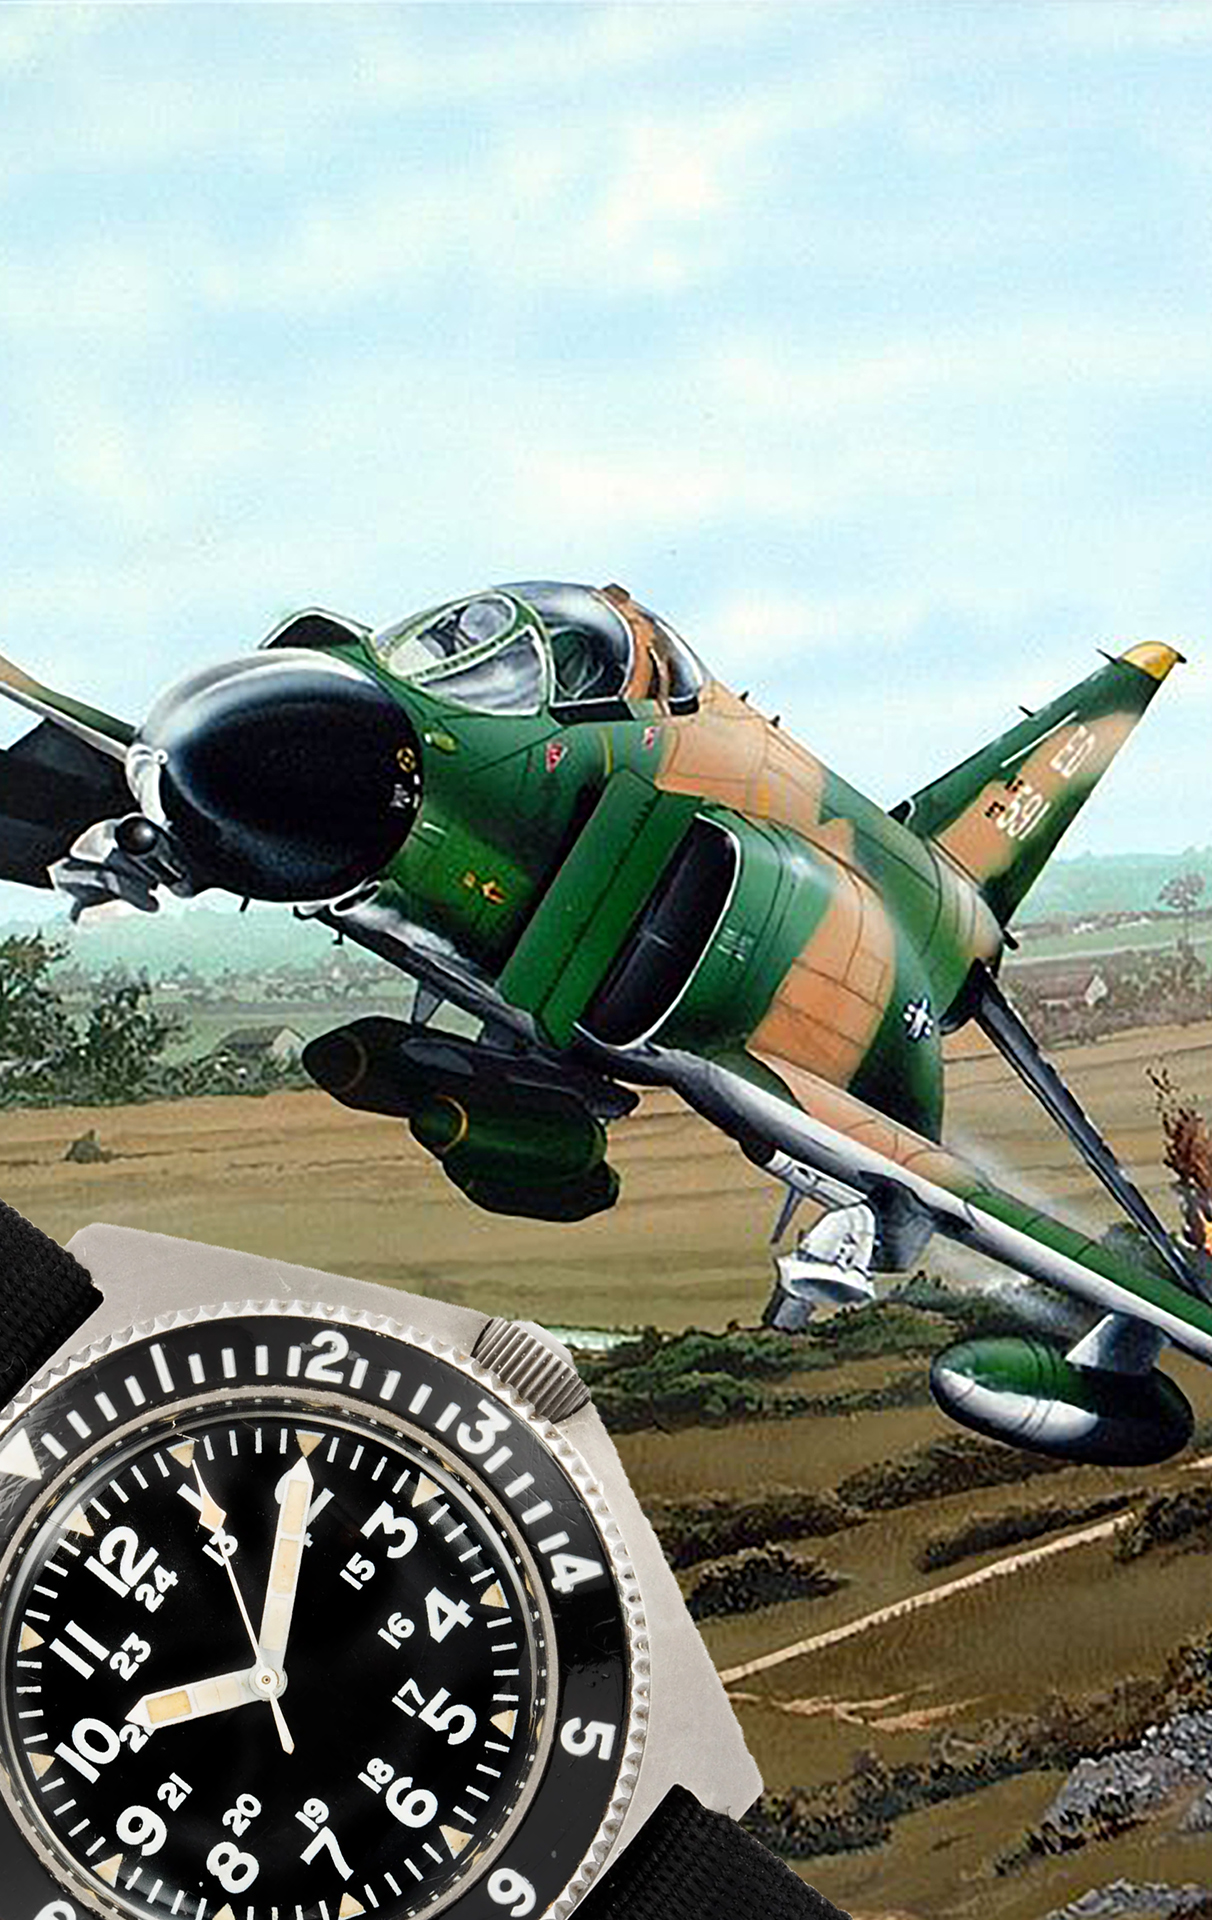 Pilot watches during the Vietnam war